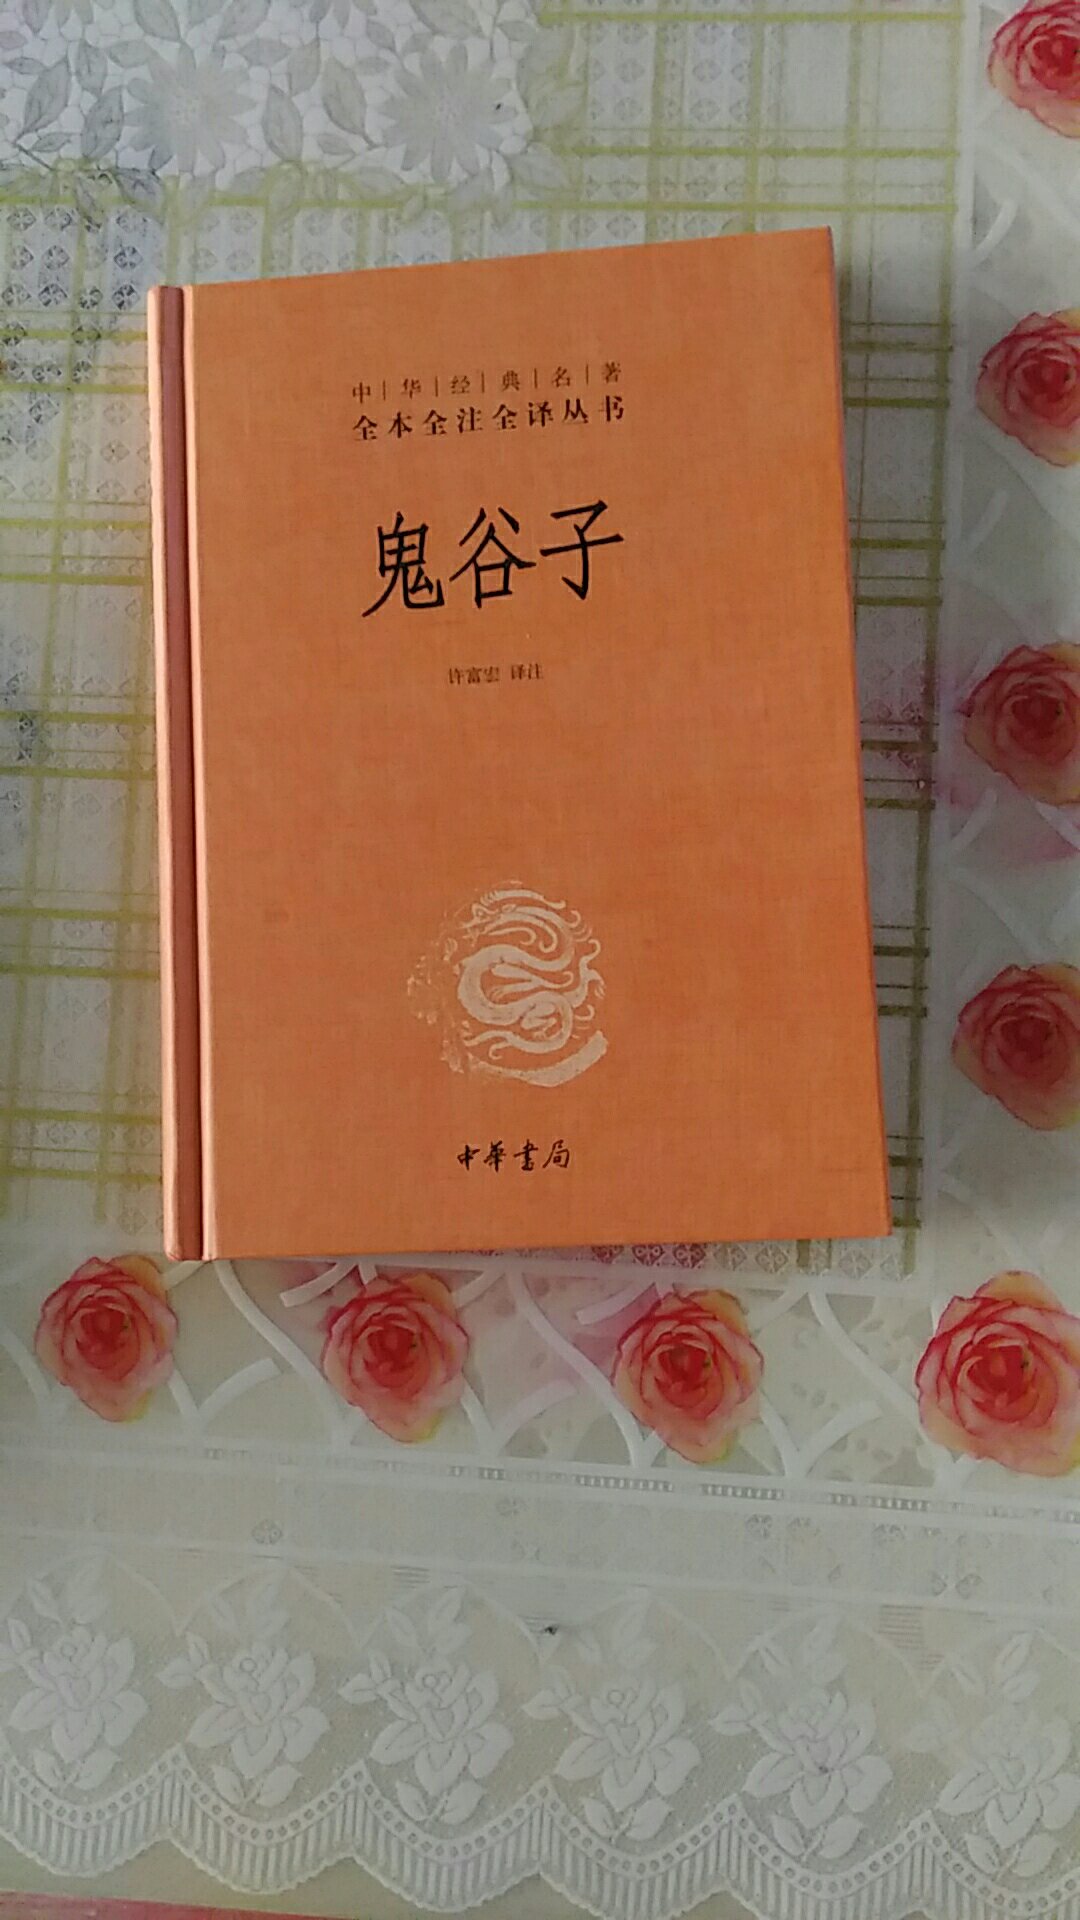 中华书局的书质量不错，快递也很给力。